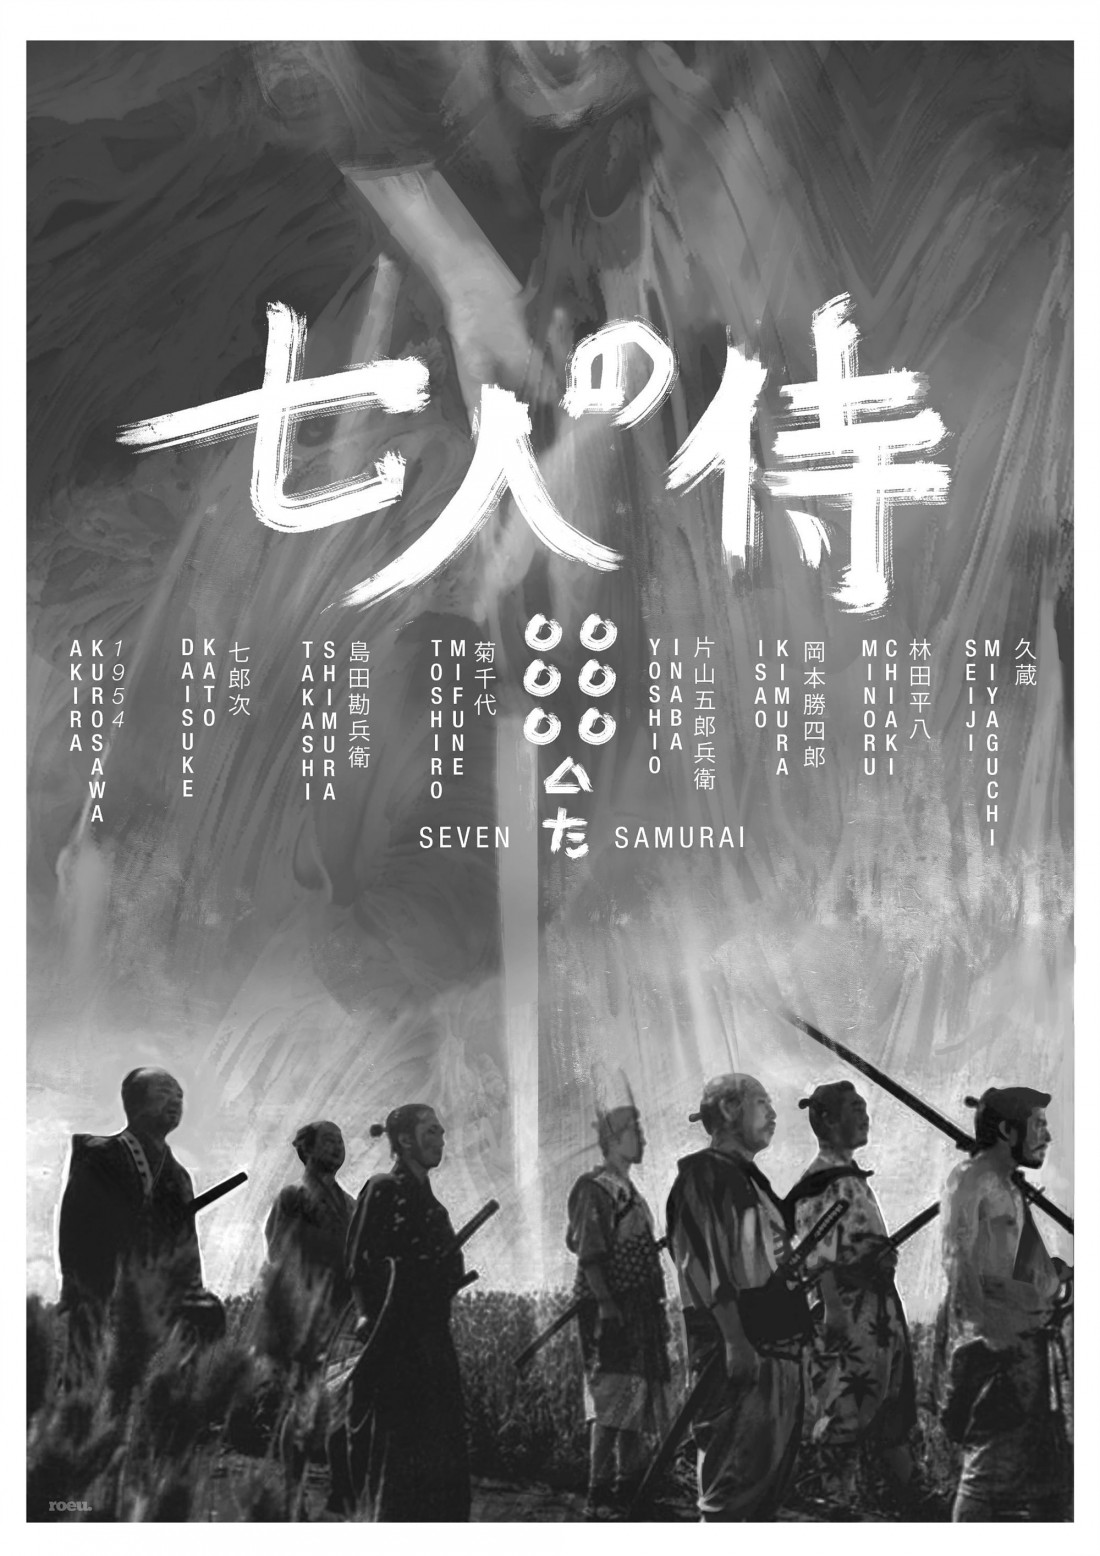 7인의사무라이.The Seven Samurai.1954.BW Photo-Image